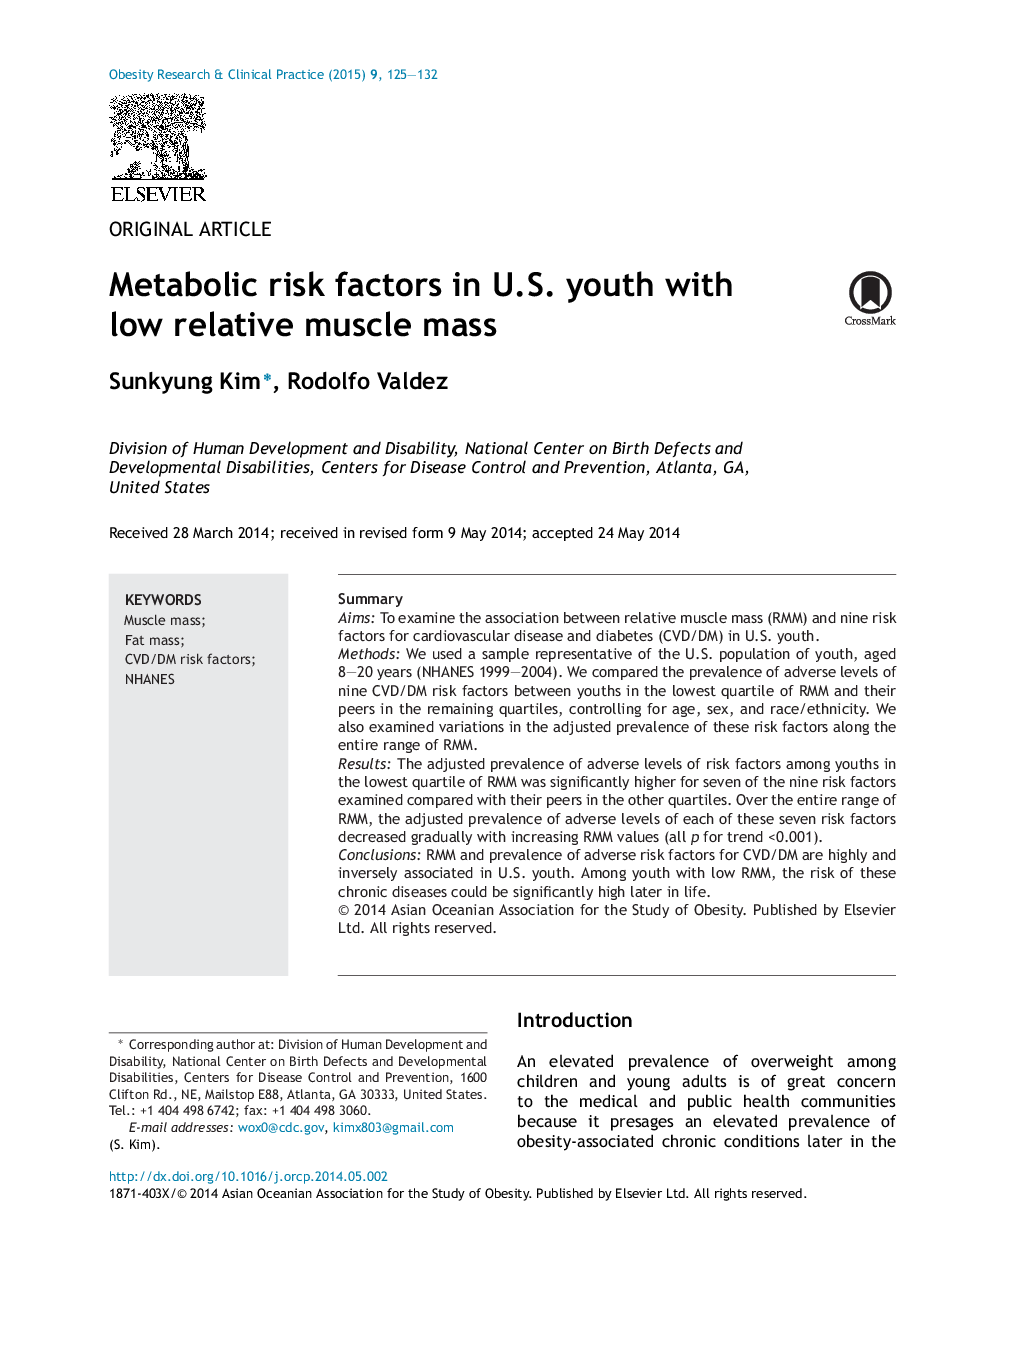 عوامل خطر متابولیک در جوانان ایالات متحده با توده عضلانی نسبی پایین 